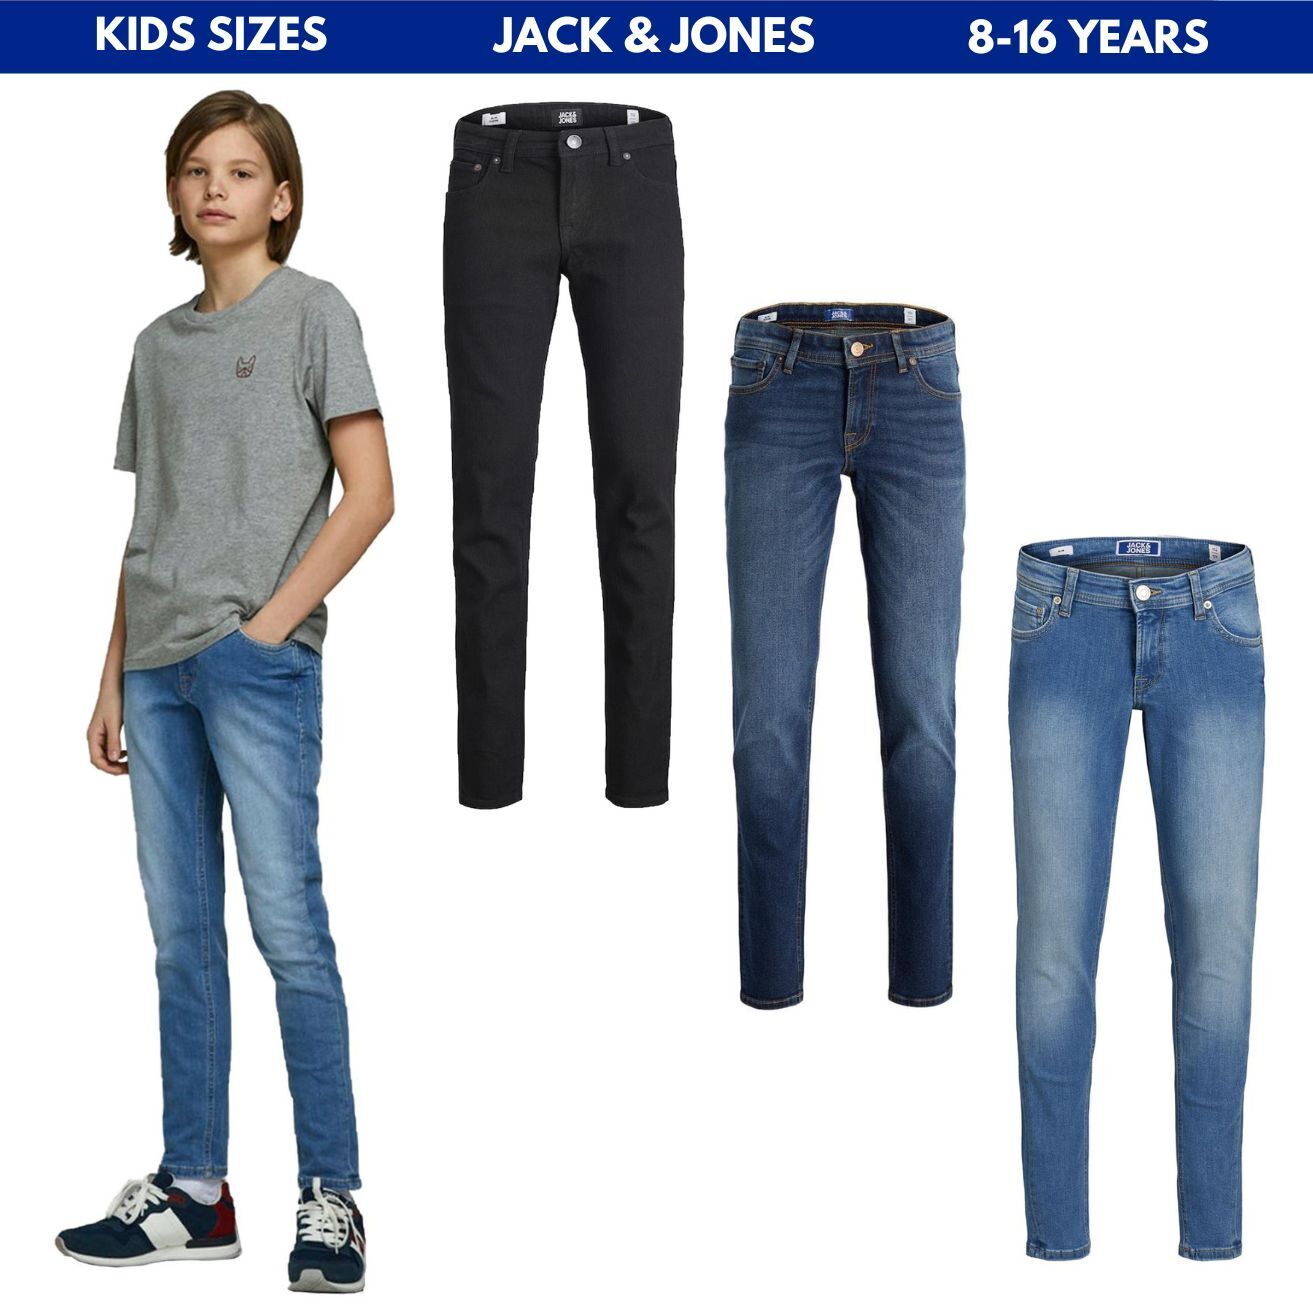 Kids Skinny Jeans Jack & Jones Boys Denim Pants Black & Blue 8-16 Years